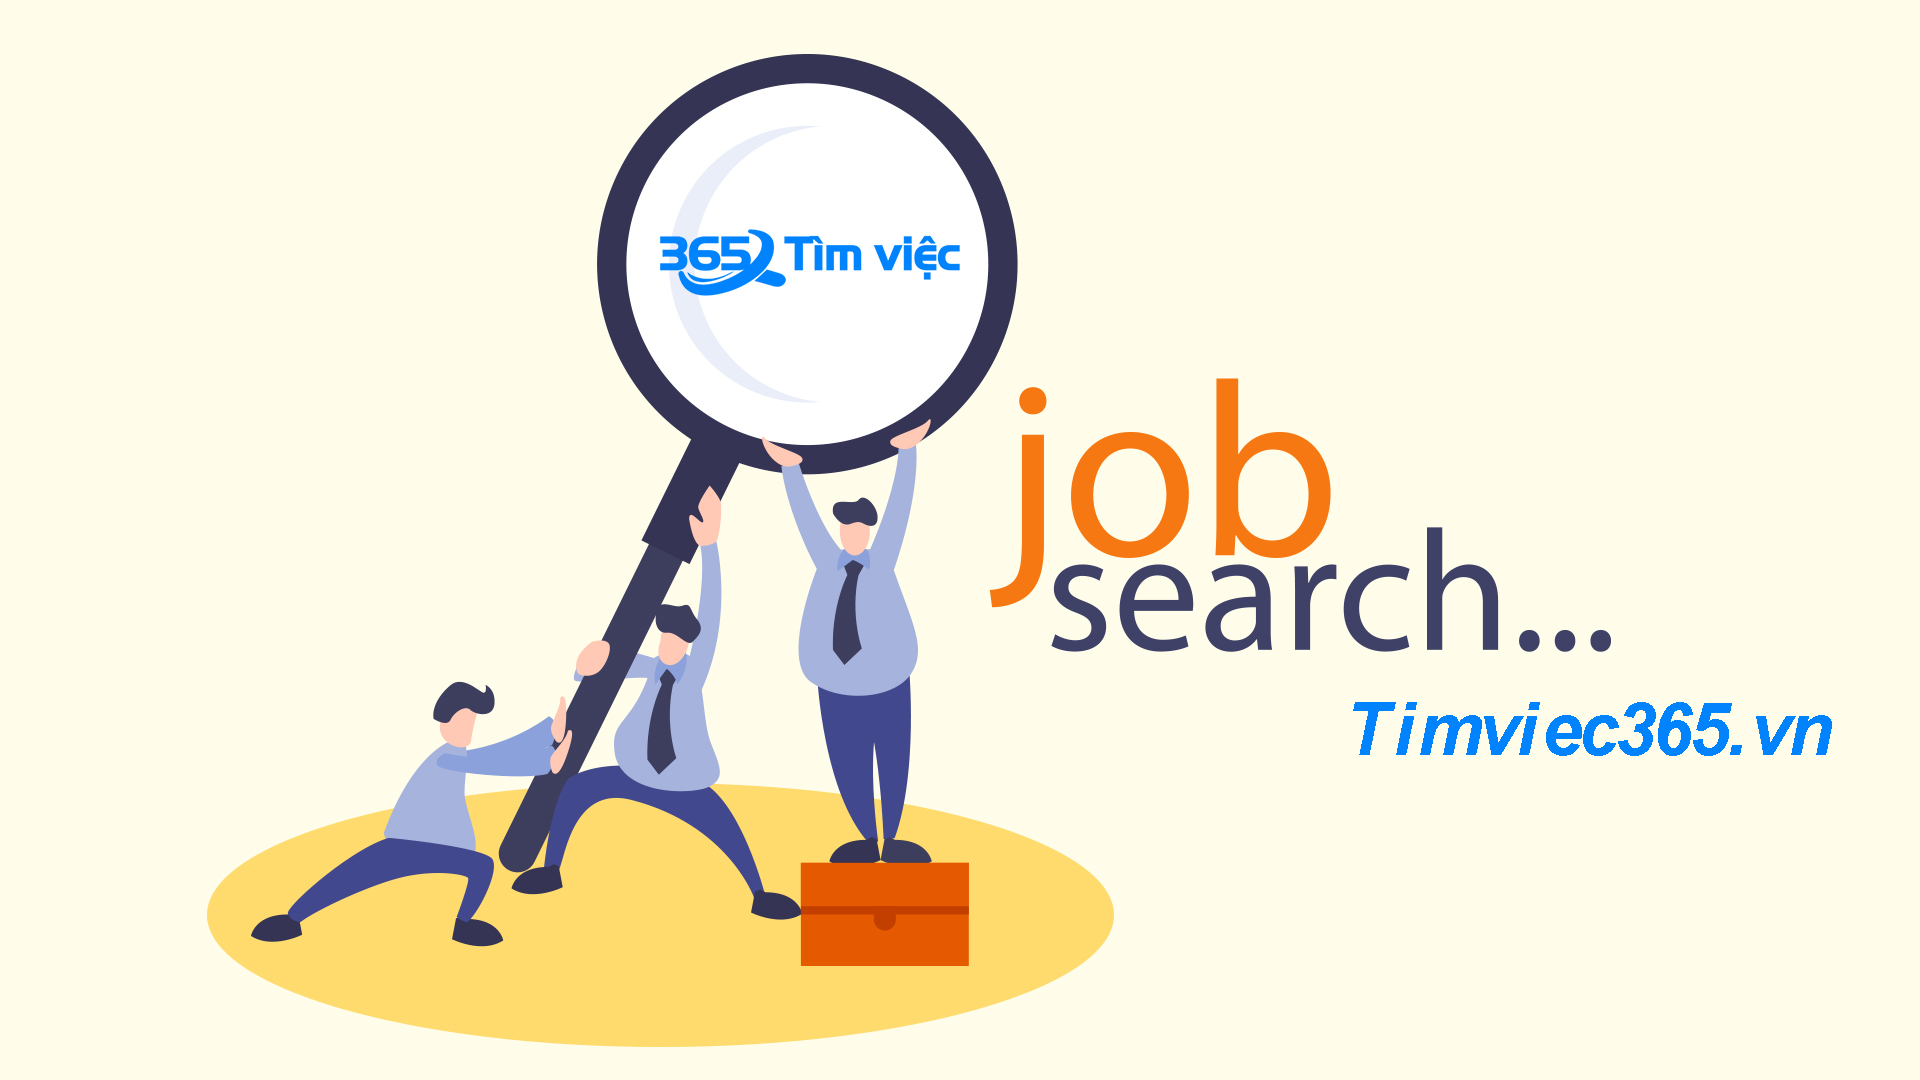 Timviec365.vn công cụ tìm kiếm việc làm hữu hiệu cho các ứng viên